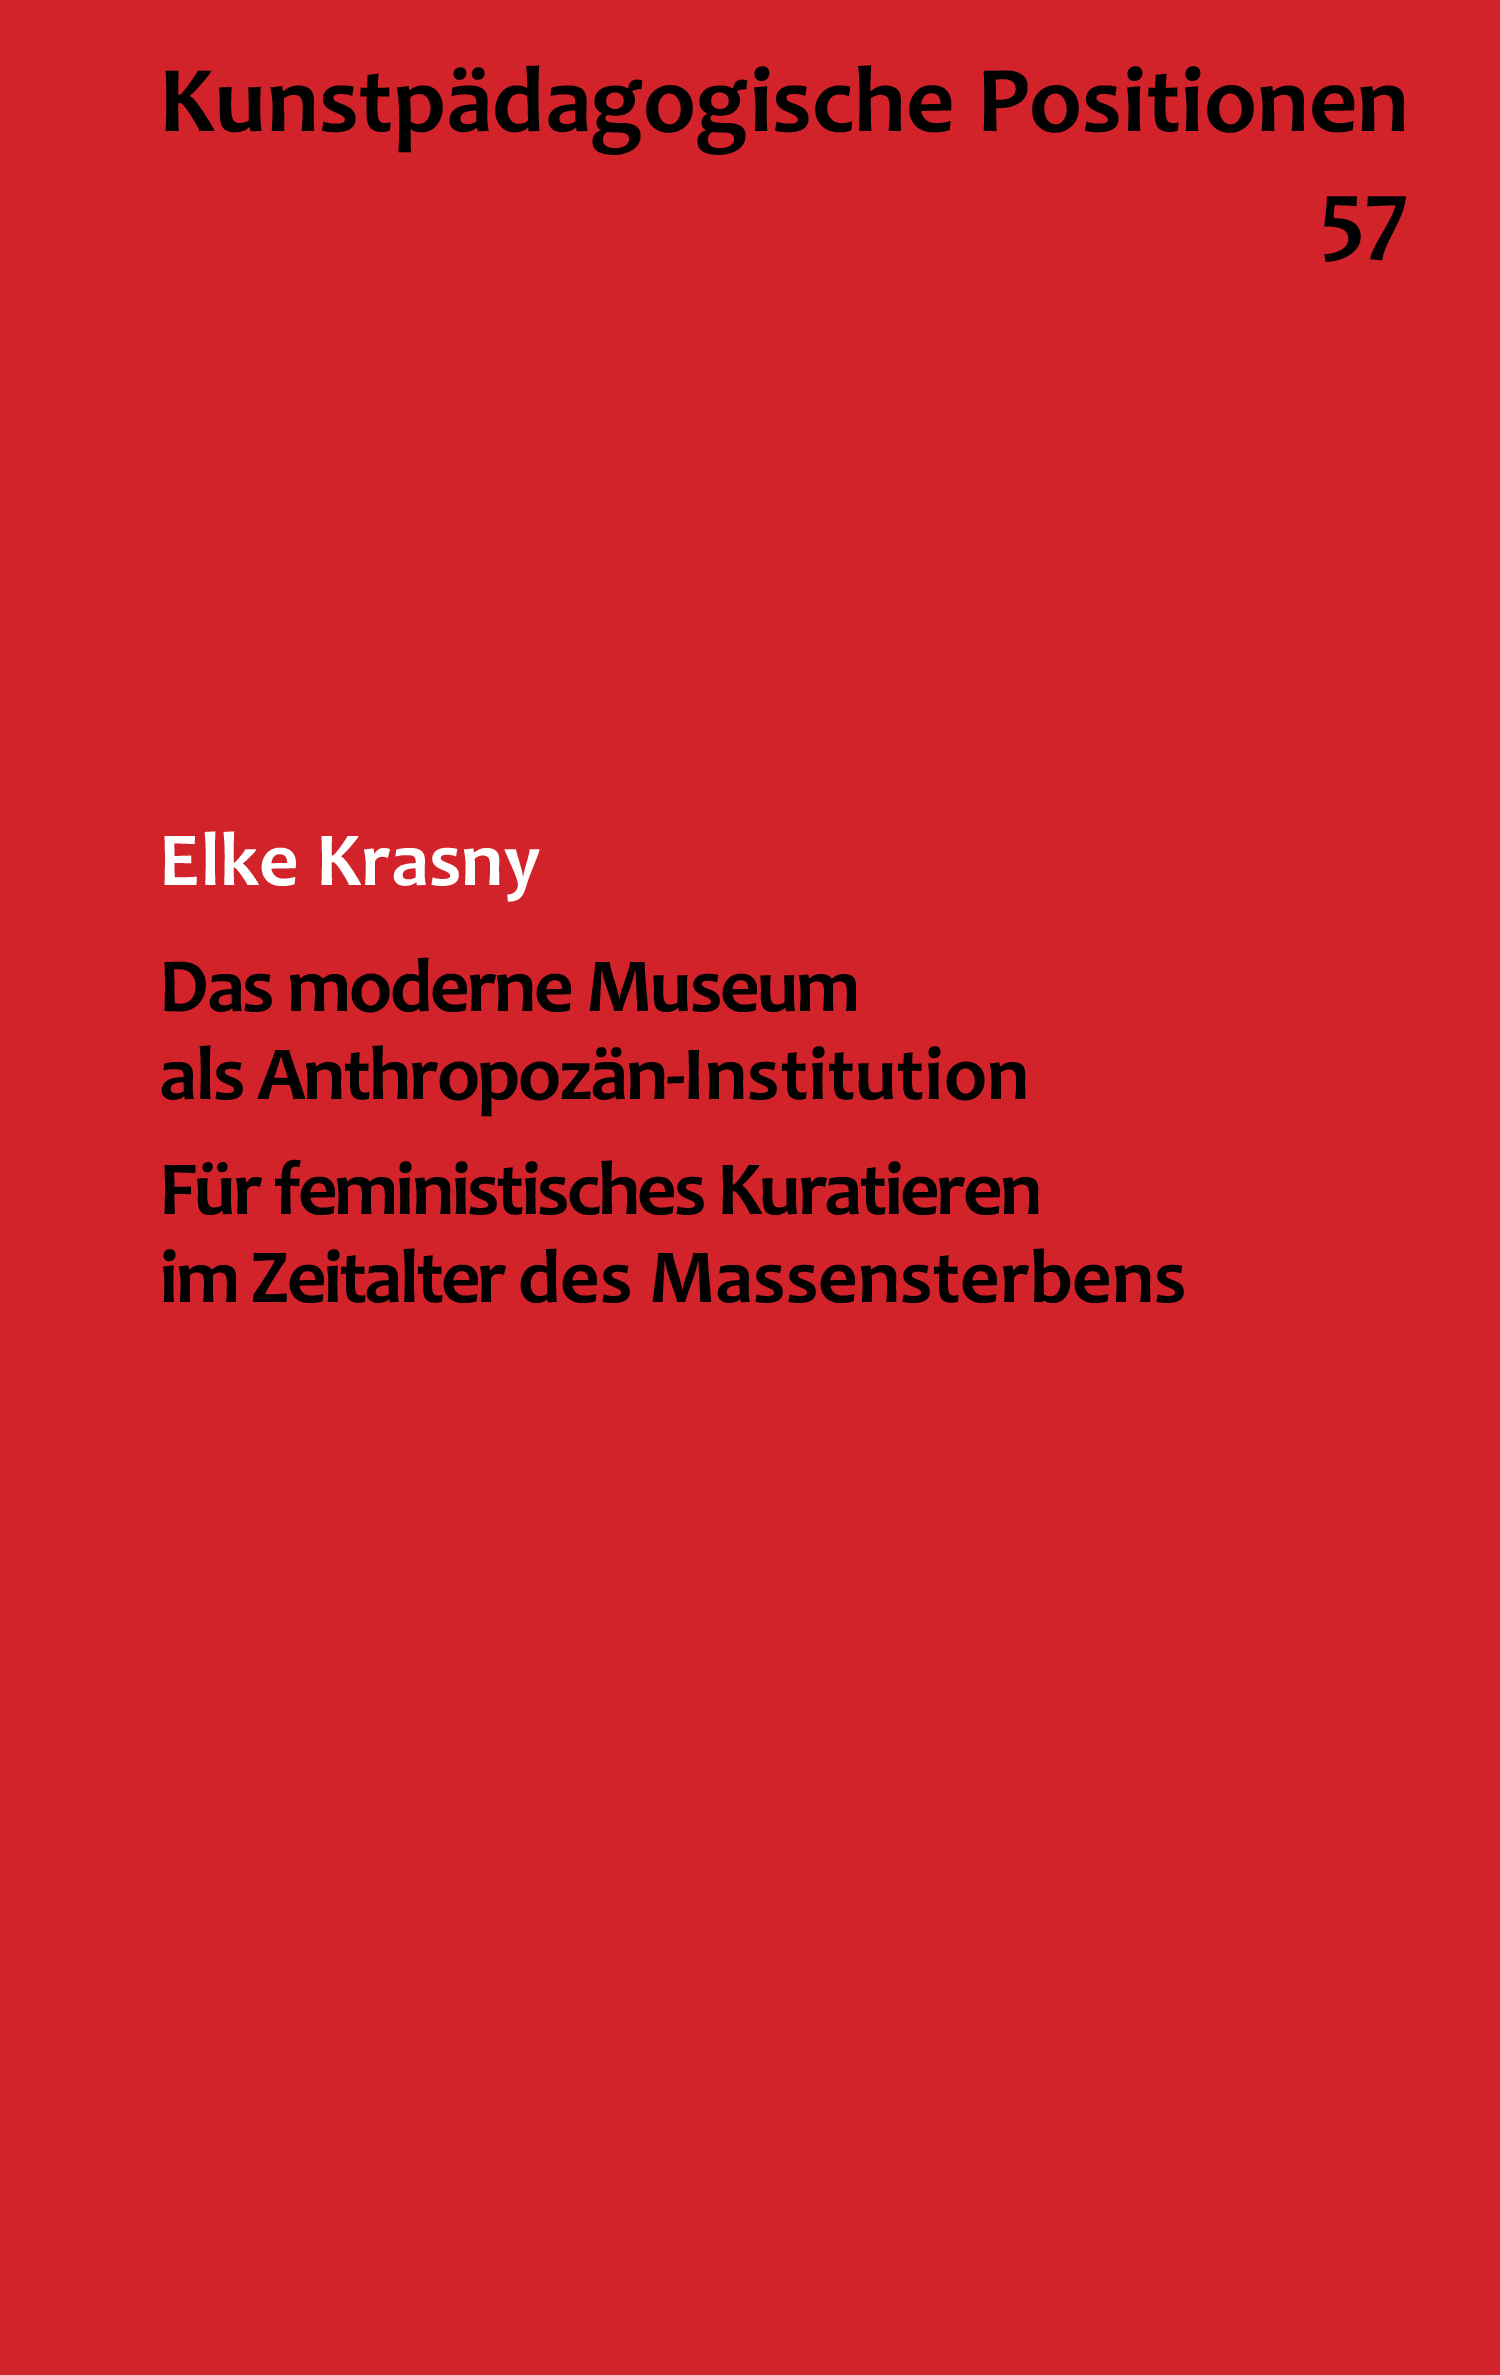 Elke-Krasny_Das-moderne-Museum-als-Anthropozaen-Institution.-Fuer-feministisches-Kuratieren-im-Zeitalter-des-Massensterbens_Kunstpädagogische-Positionen-57_